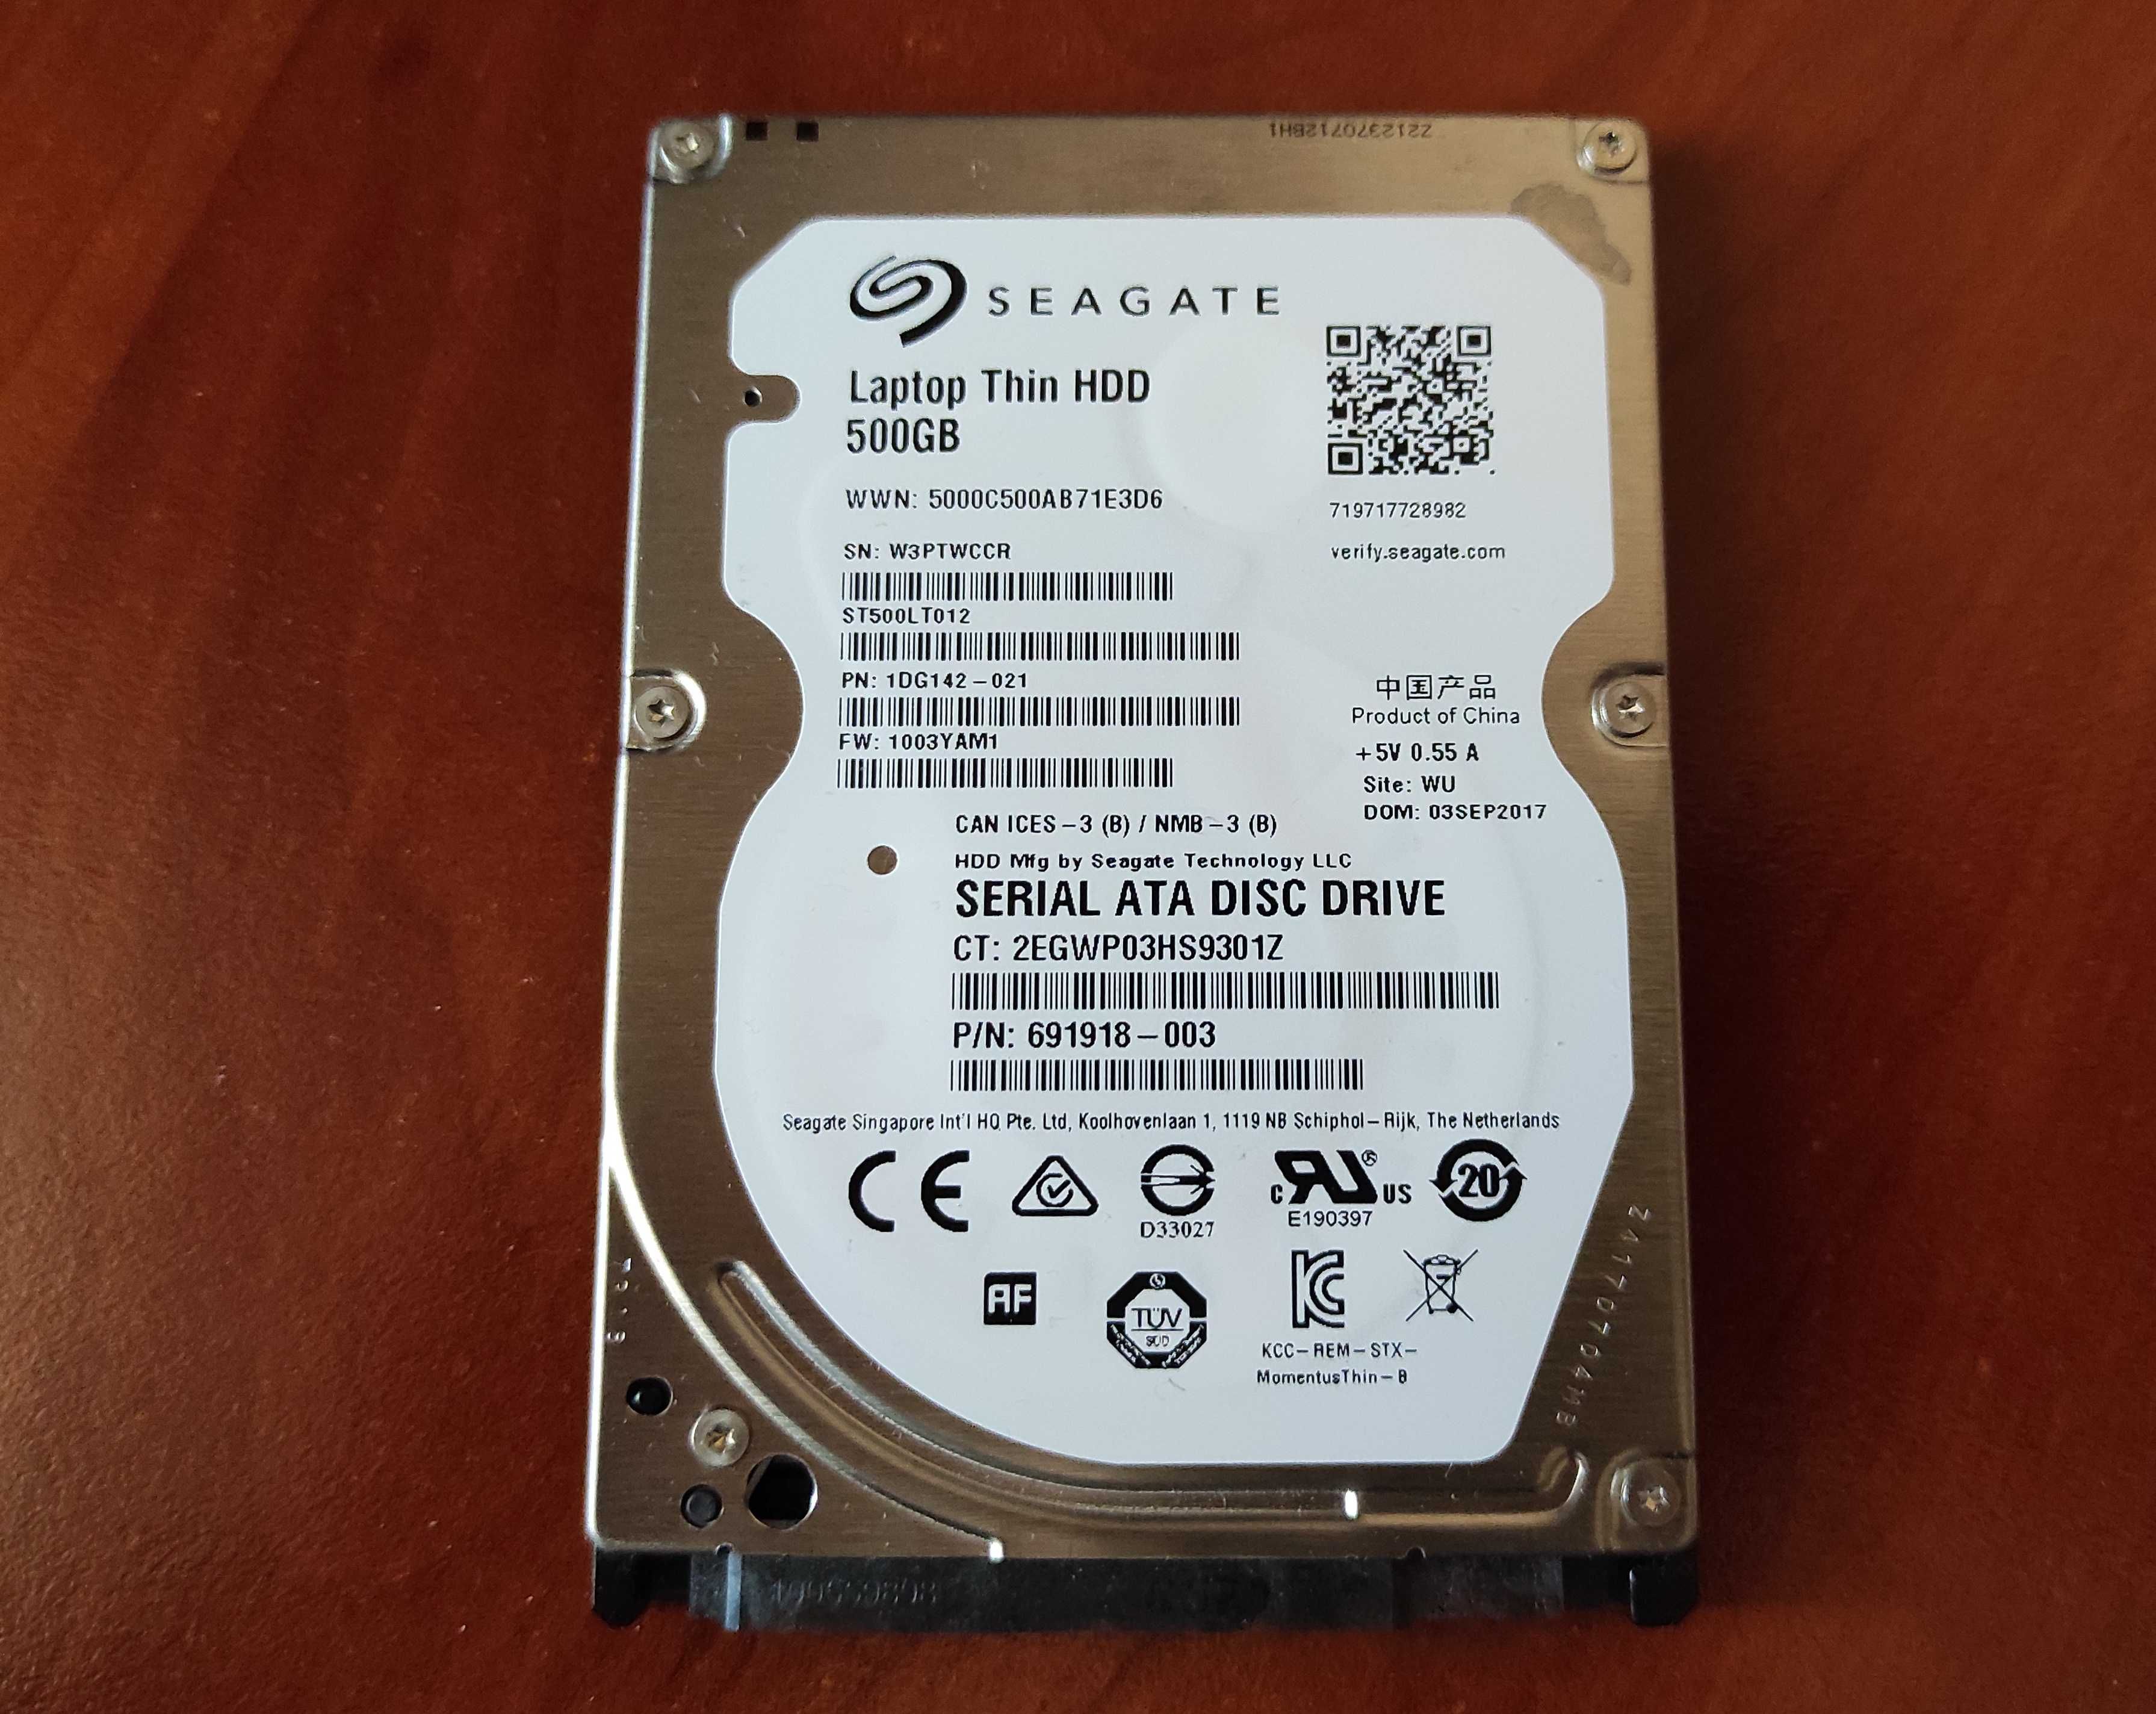 HDD 2.5" 500GB SATA3 Seagate Laptop Thin 5400.6 (ST500LT012-1DG142)